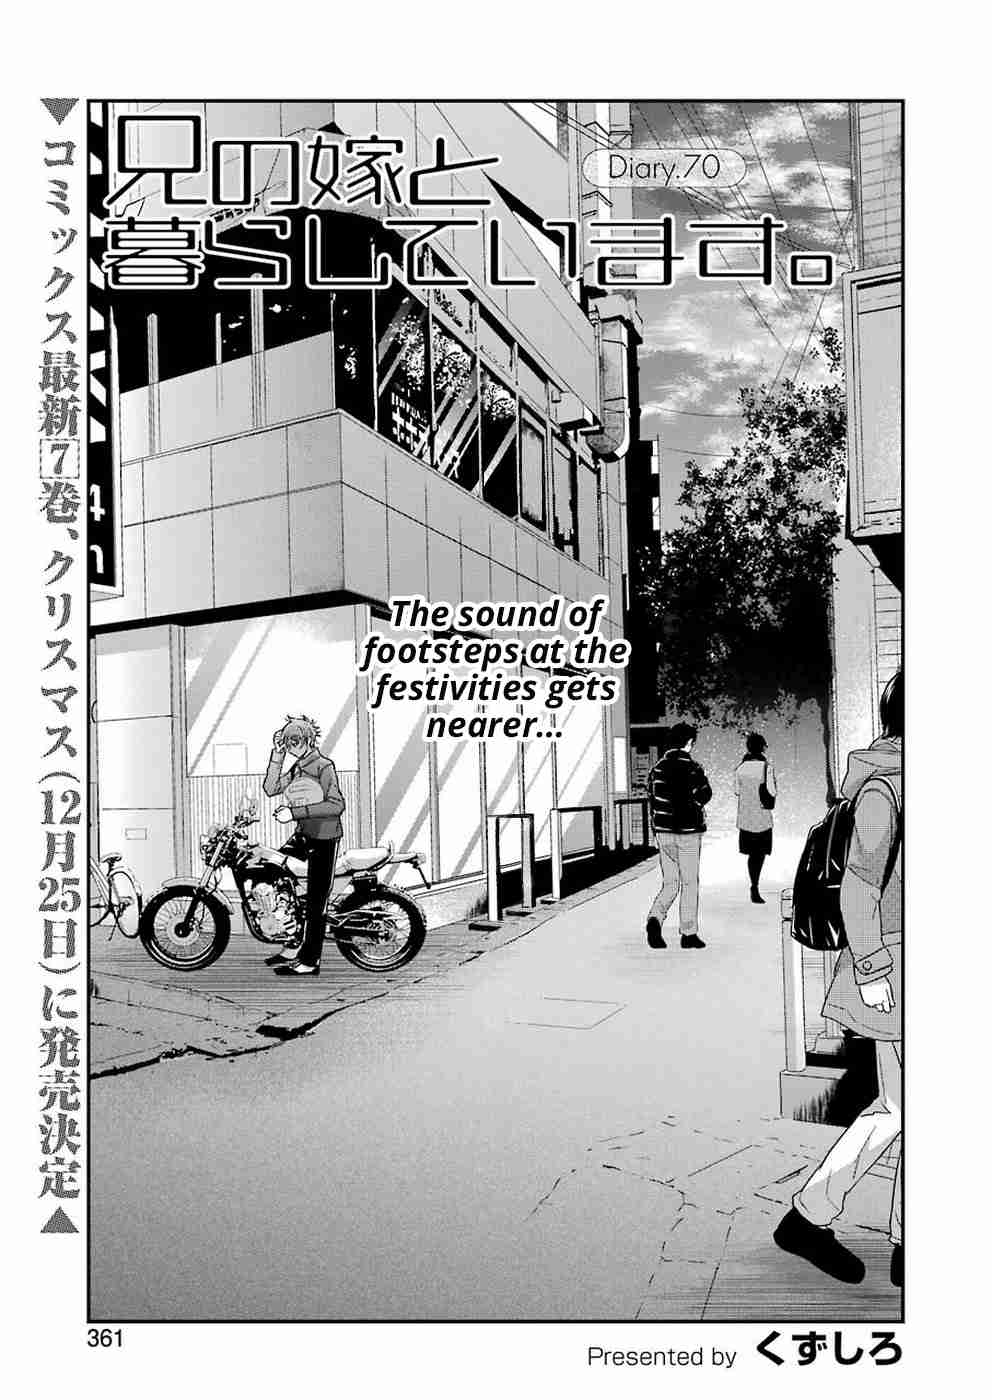 Ani no Yome to Kurashite Imasu. Vol. 7 Ch. 70 Diary 70